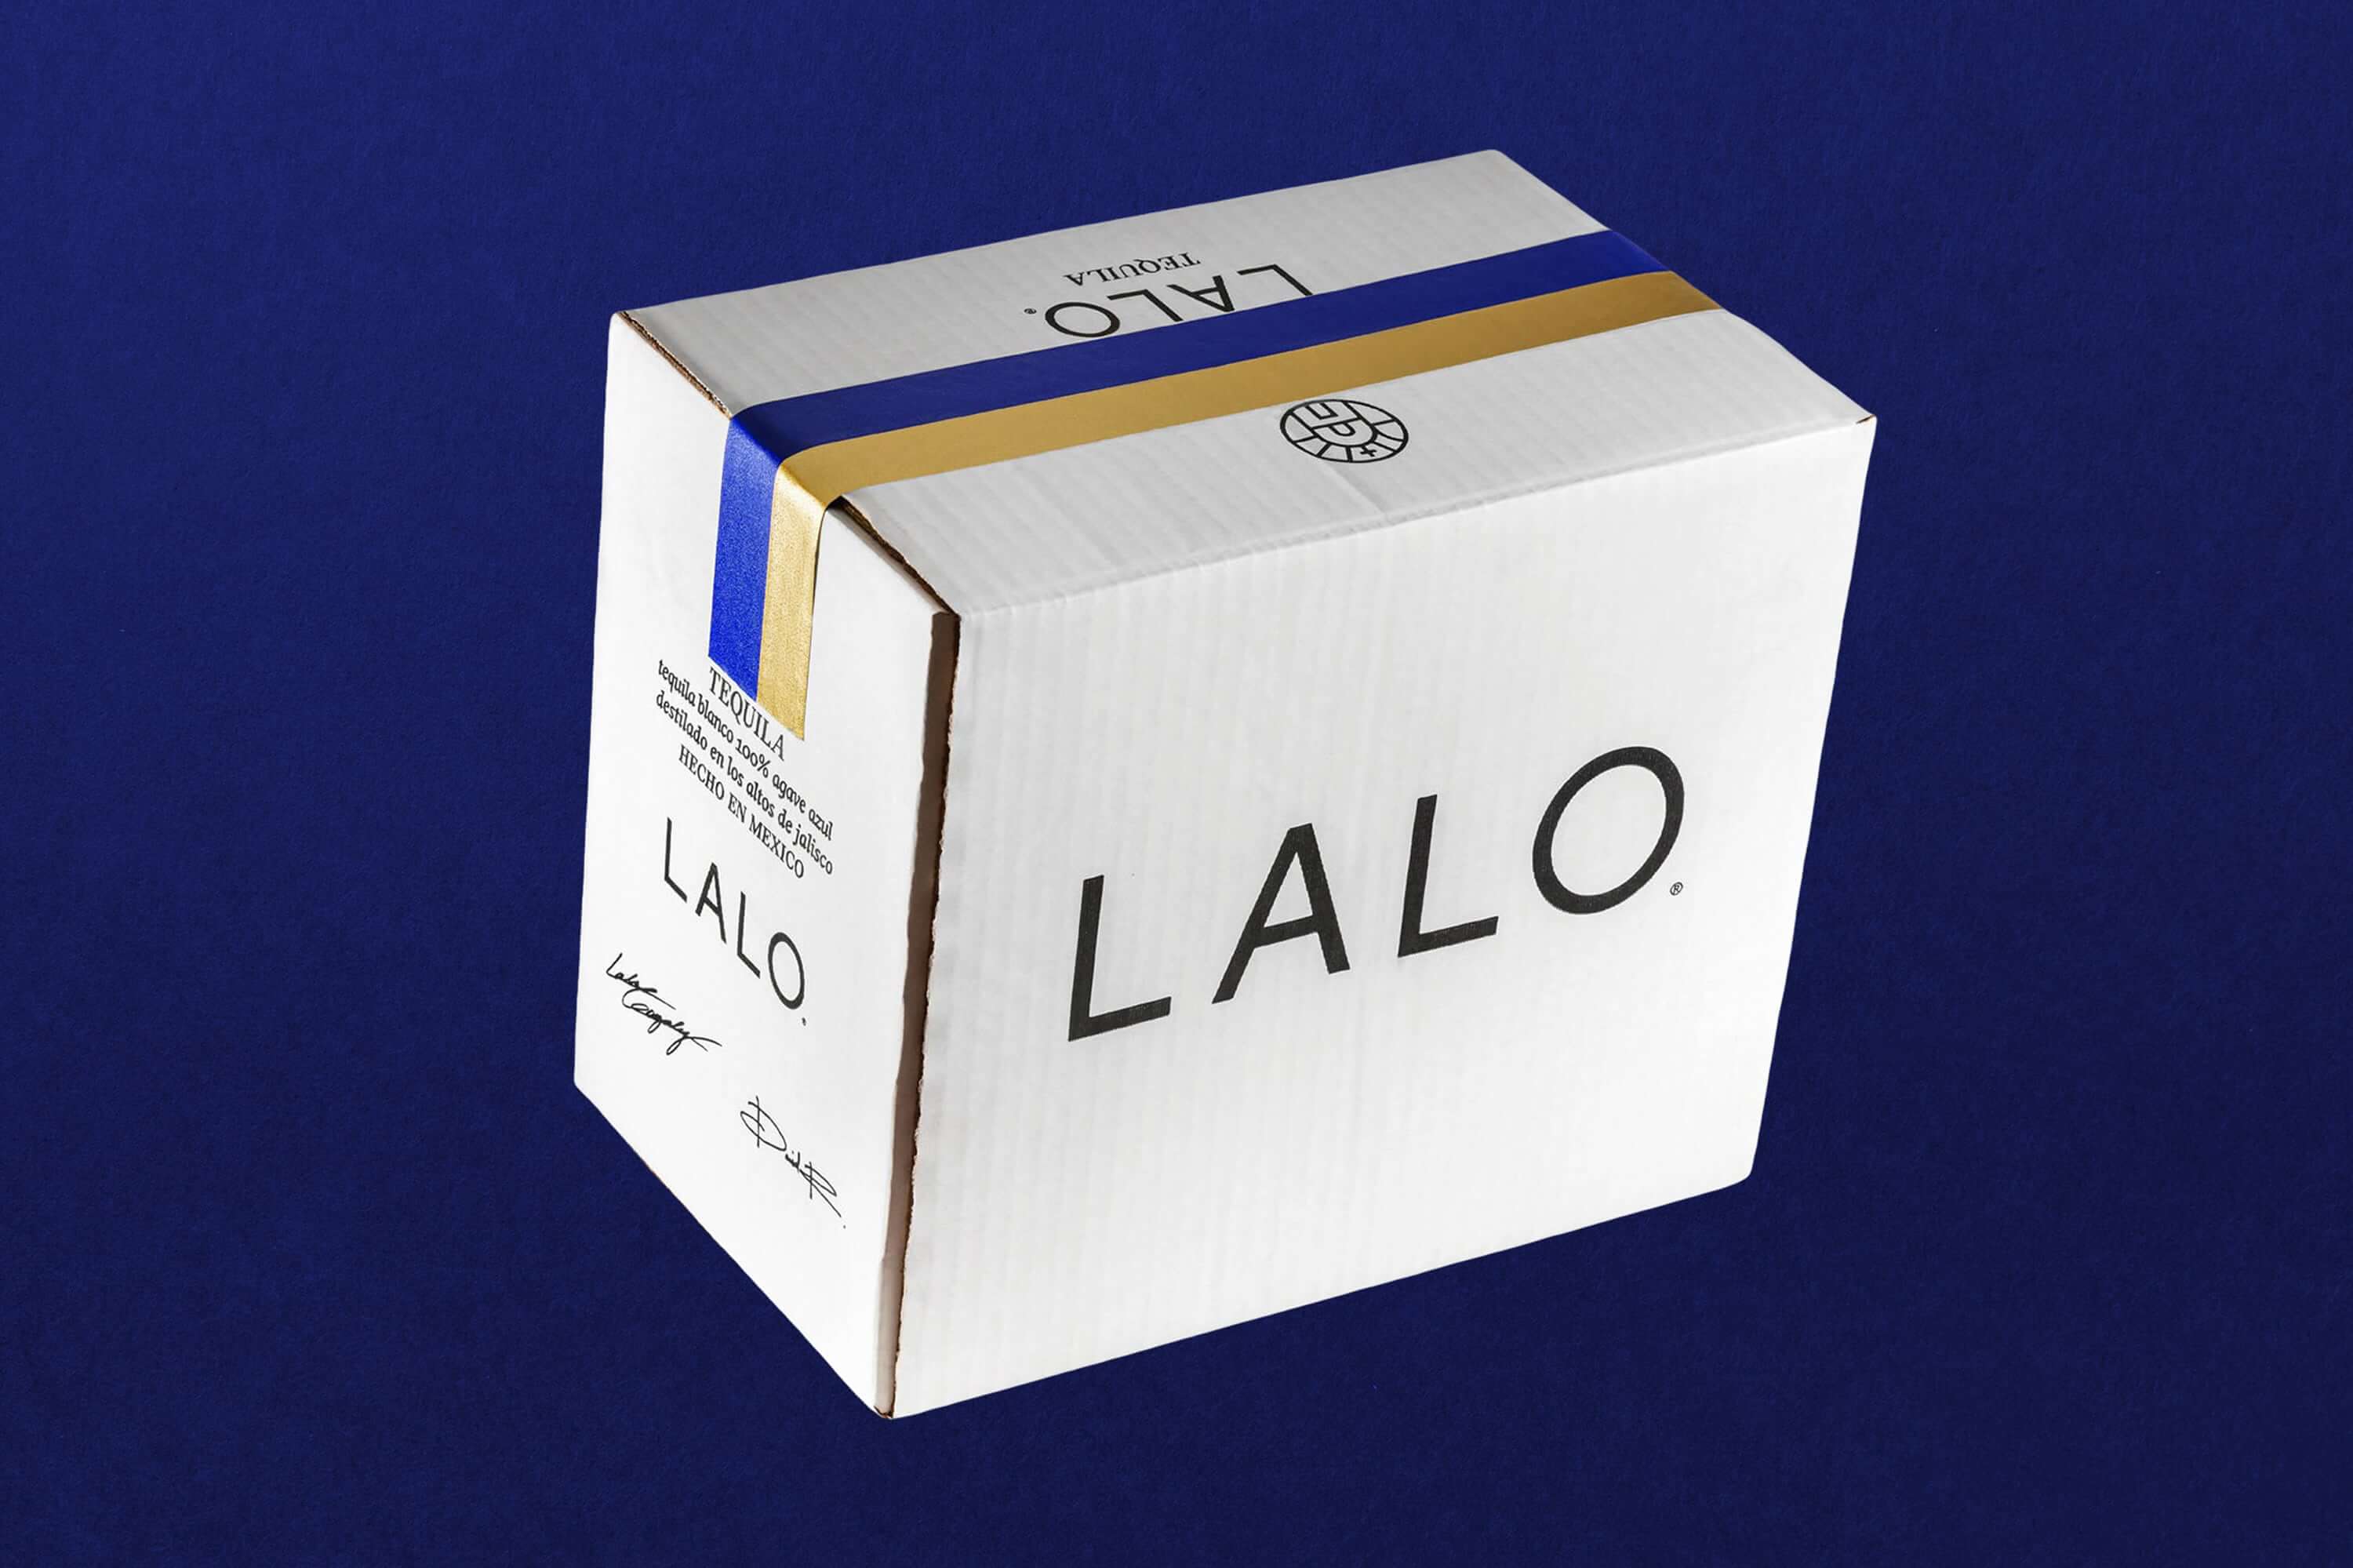 Lalo-Photoshoot-10-1